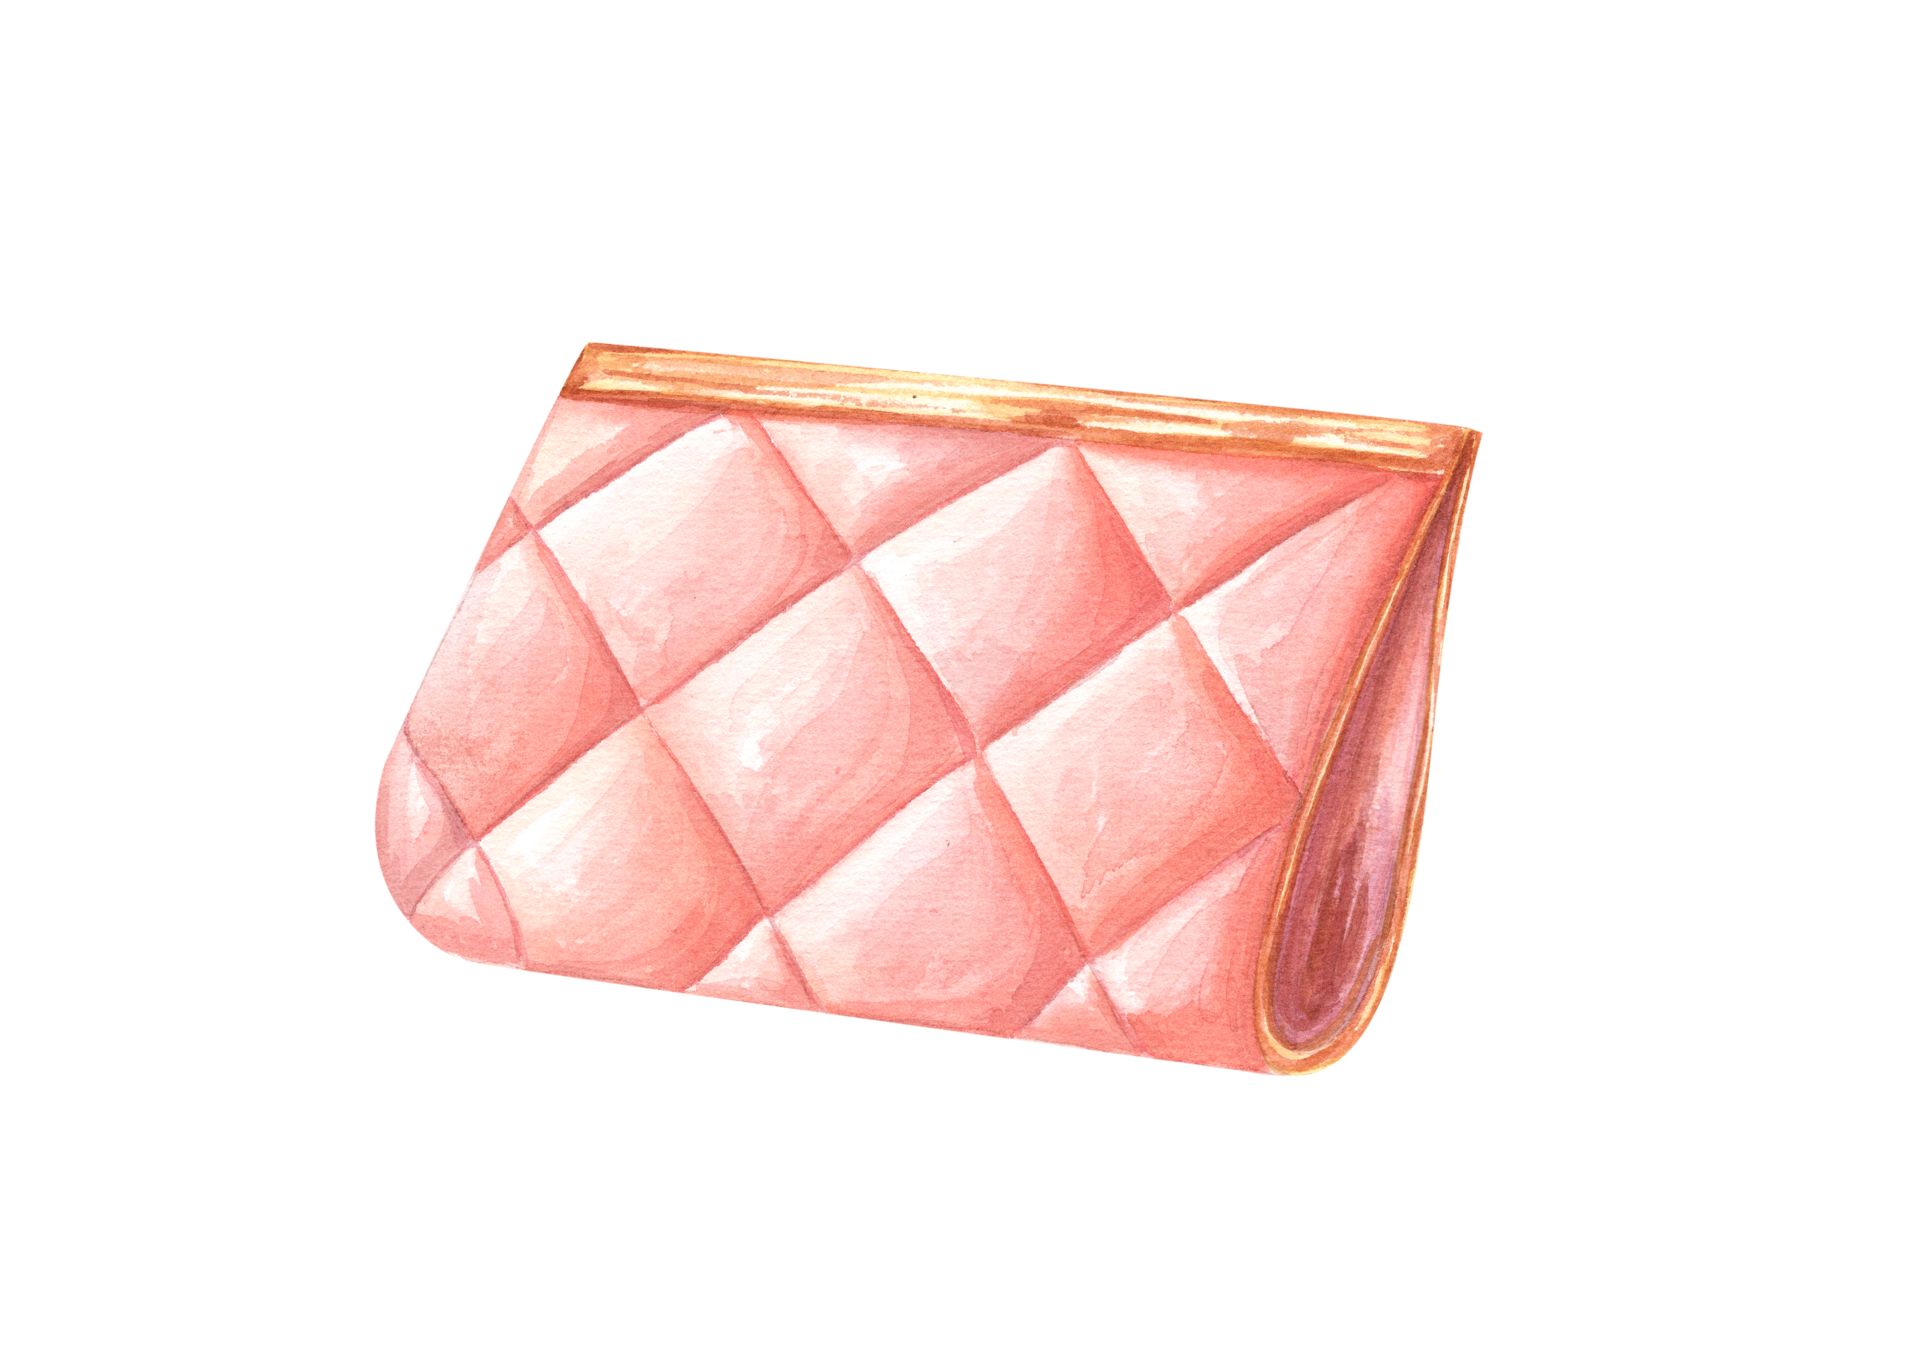 Pink Chanel bag illustration transparent background PNG clipart